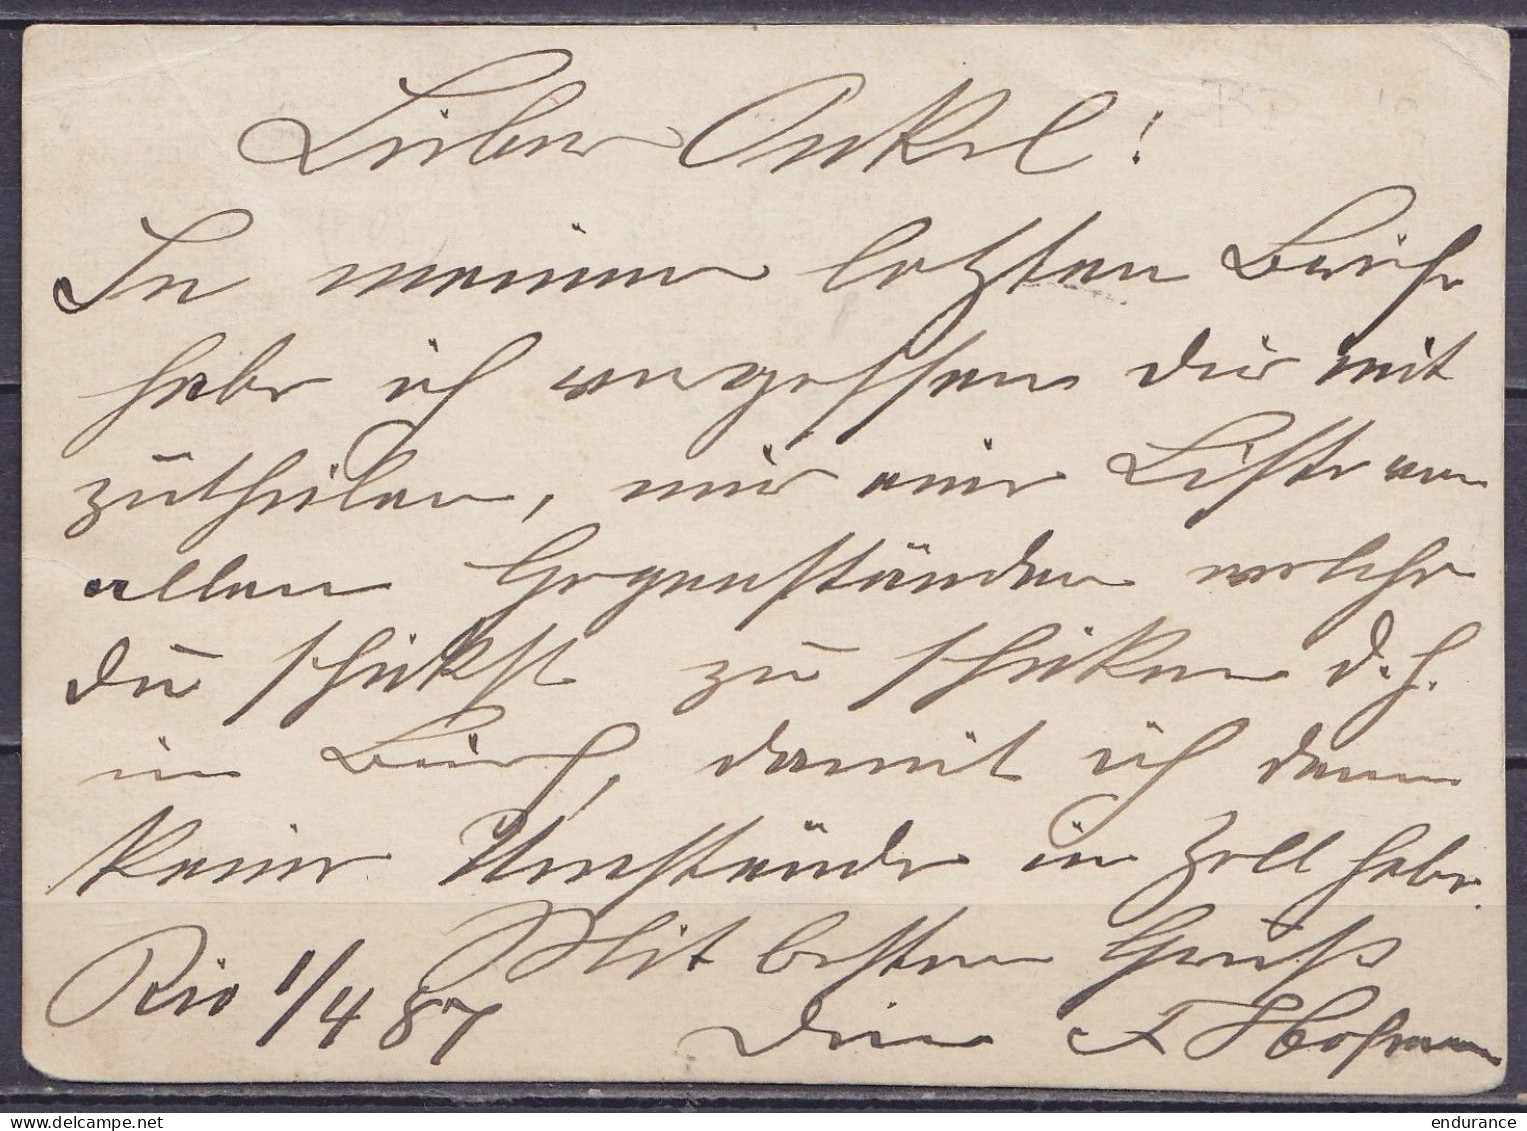 Brésil - EP CP Bilhete Postal 50R + 30R Càpt RIO DE JANEIRO /1 ABR 1887 Pour REICHENBACH Sachsen Allemagne - Lettres & Documents